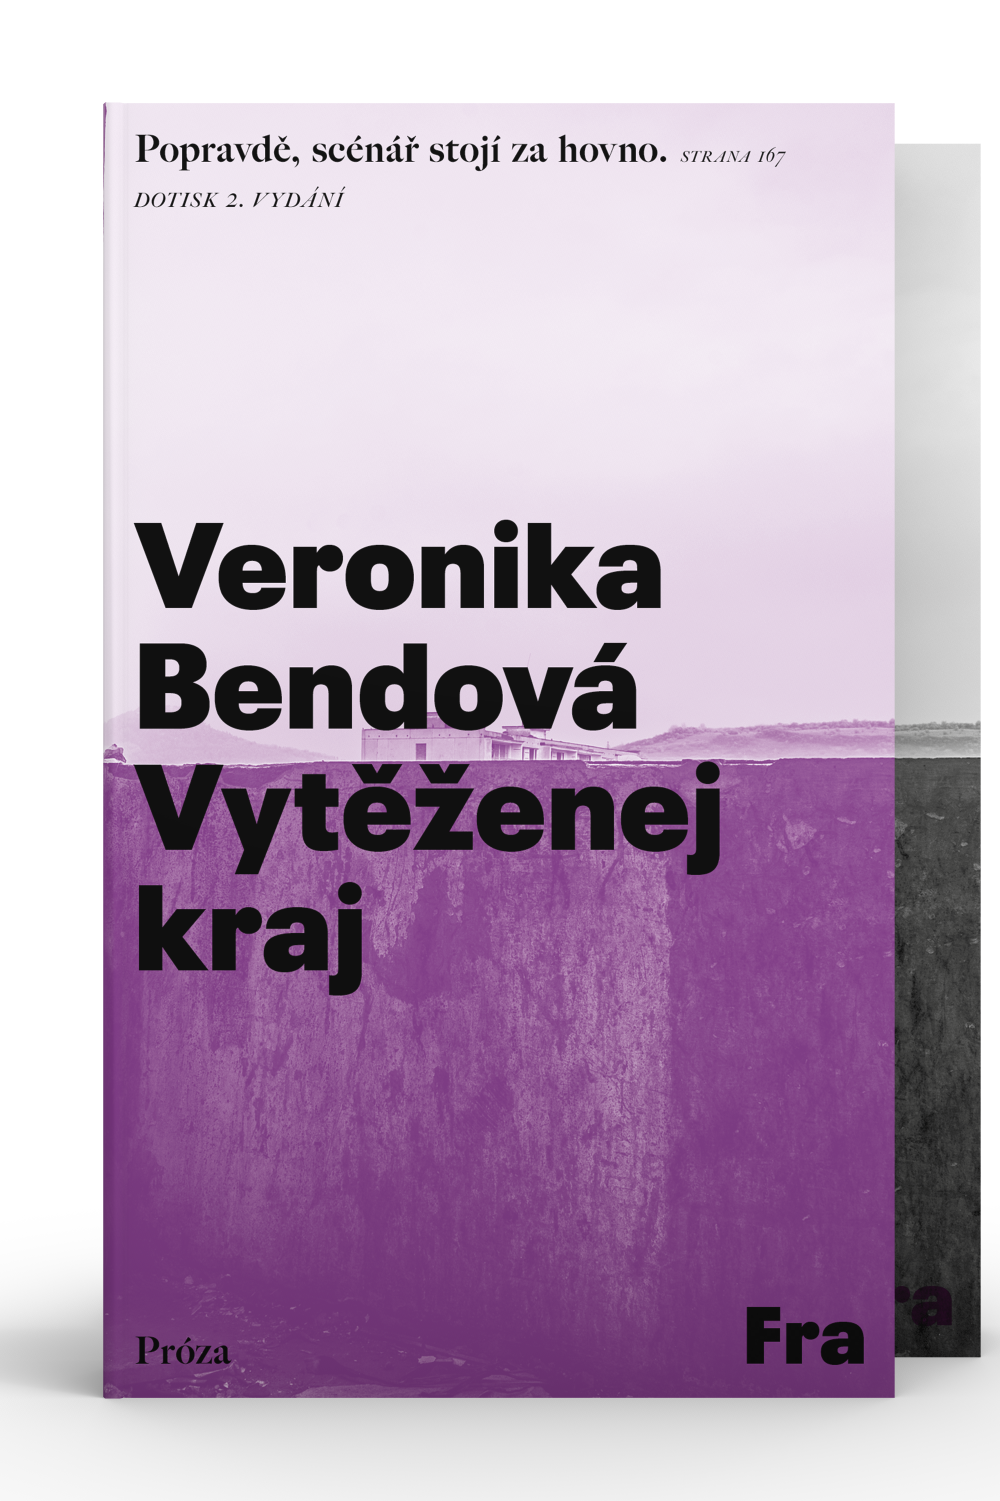 Veronika Bendová, Vytěženej kraj